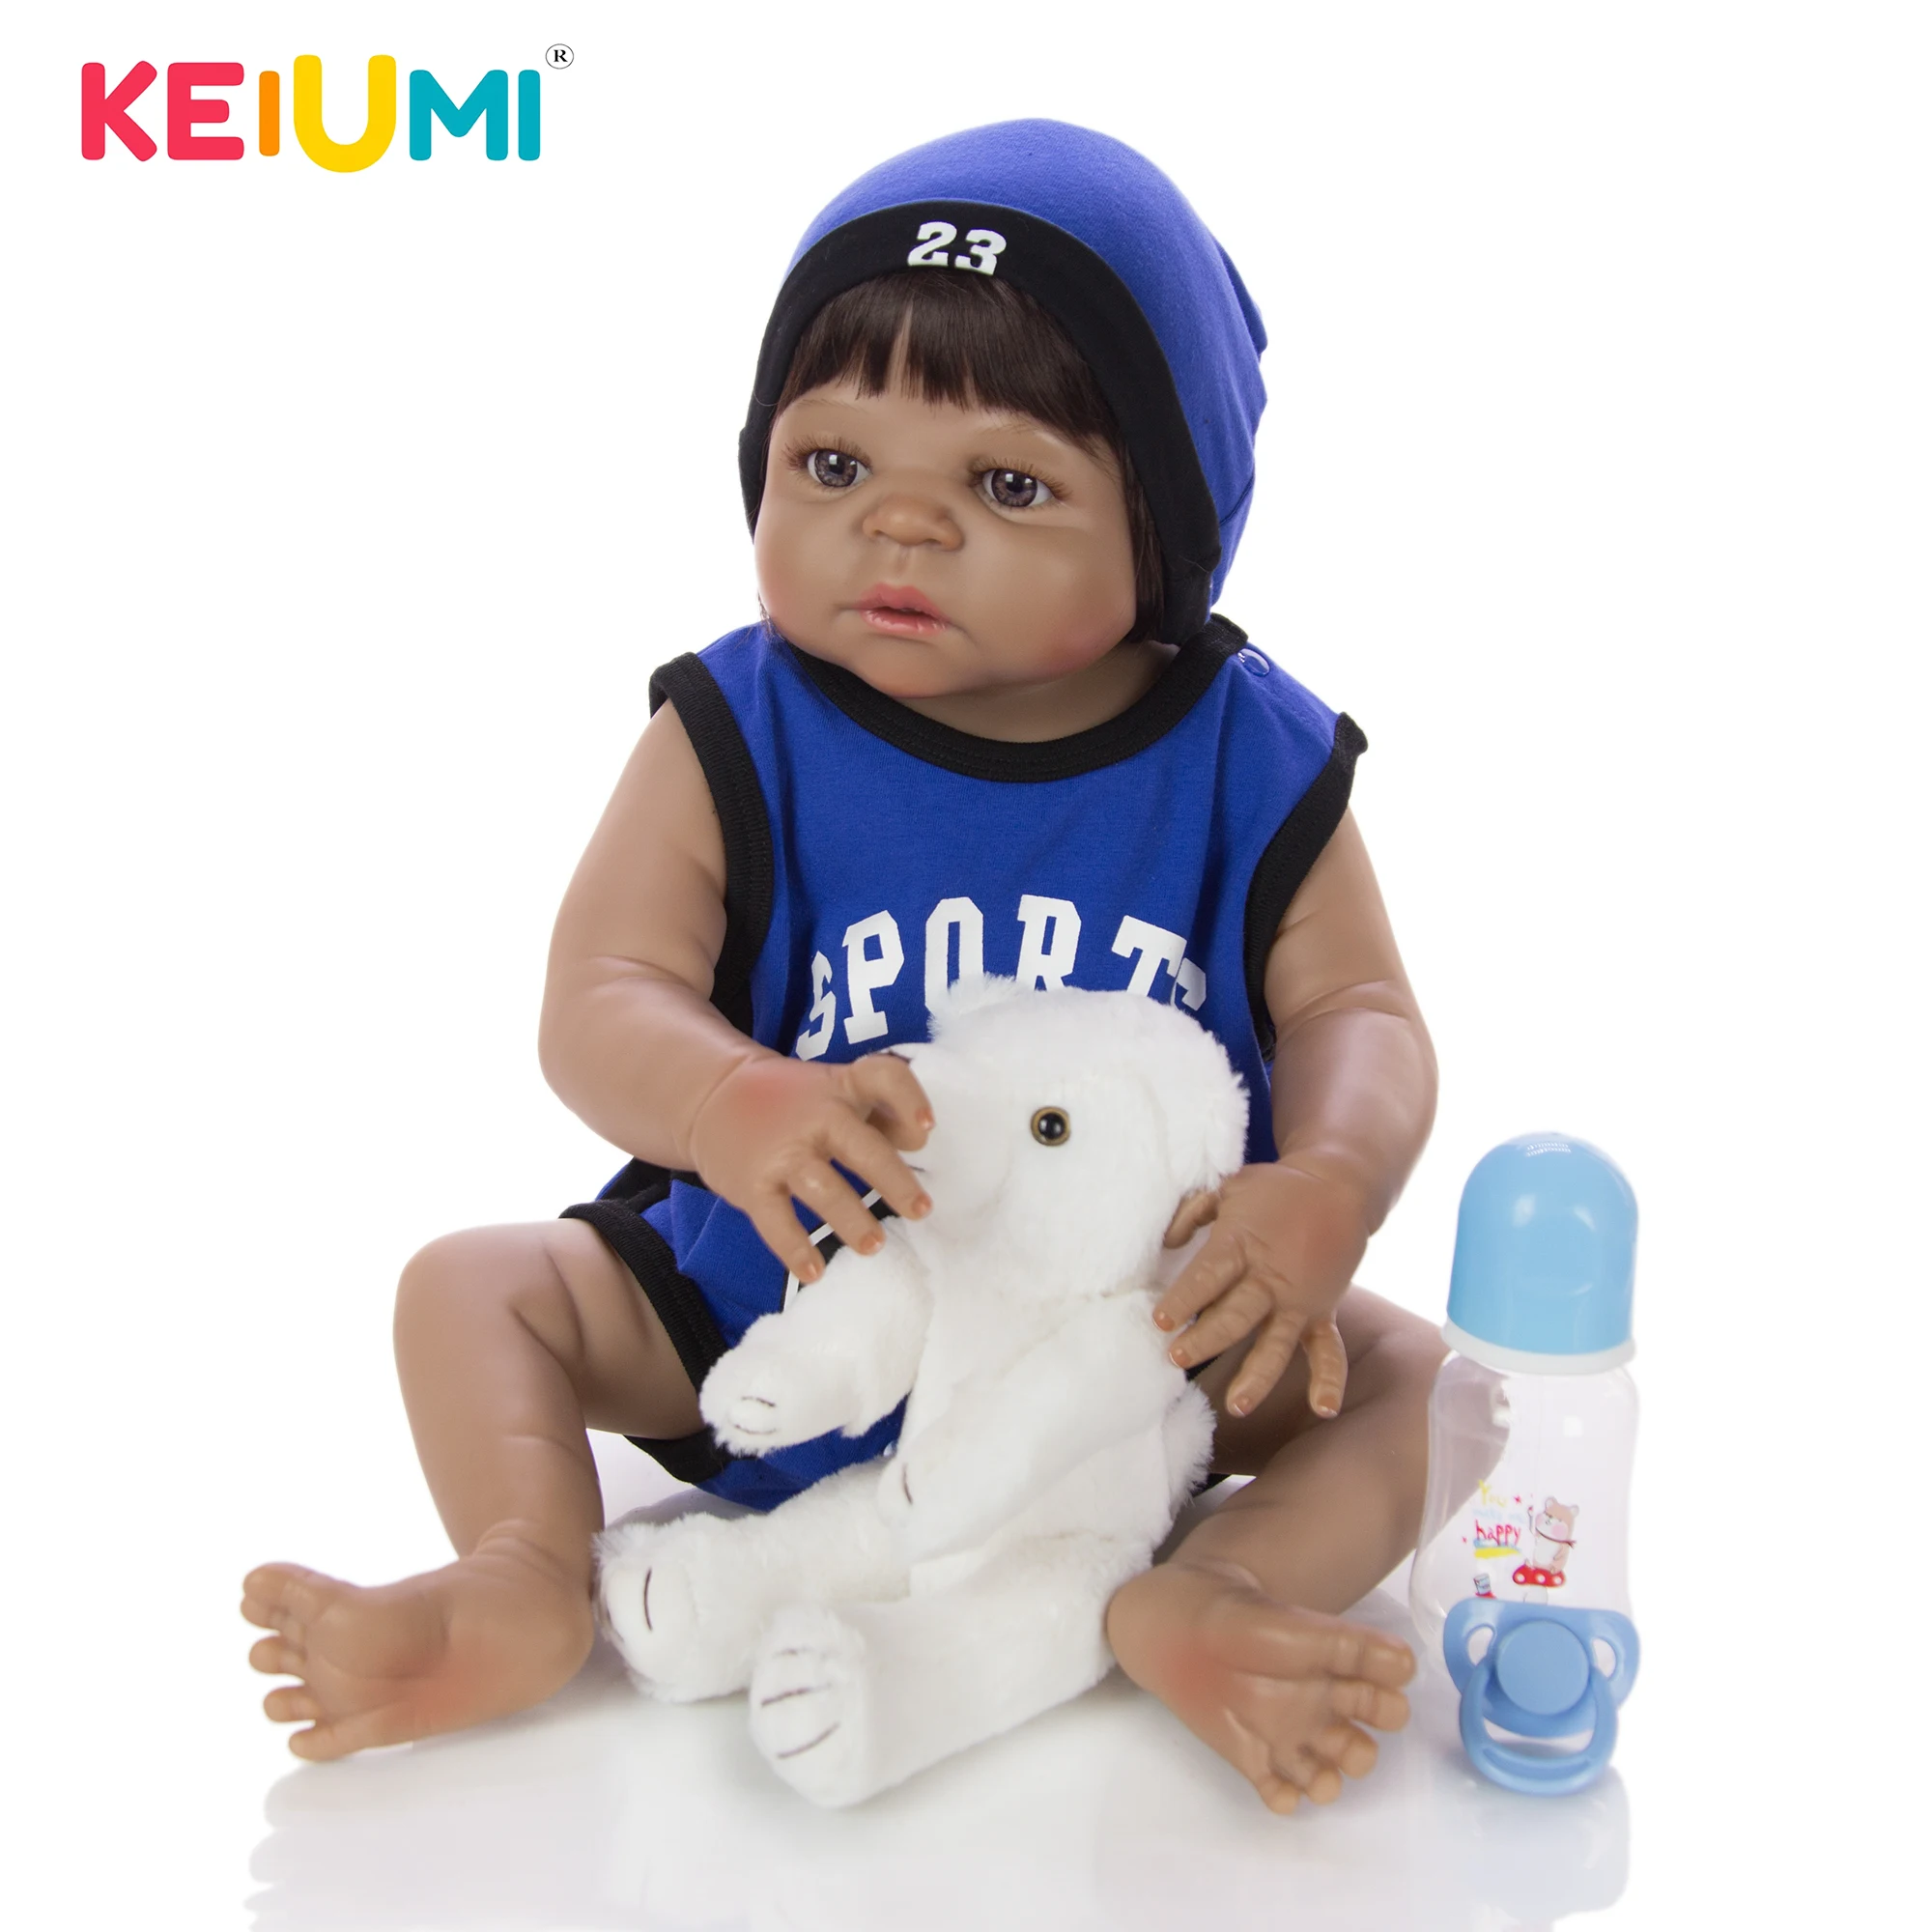 

KEIUMI Alive 23 дюйма 57 см силиконовые куклы для новорожденных мальчиков, реалистичные детские игрушки, рождественские подарки для мальчиков